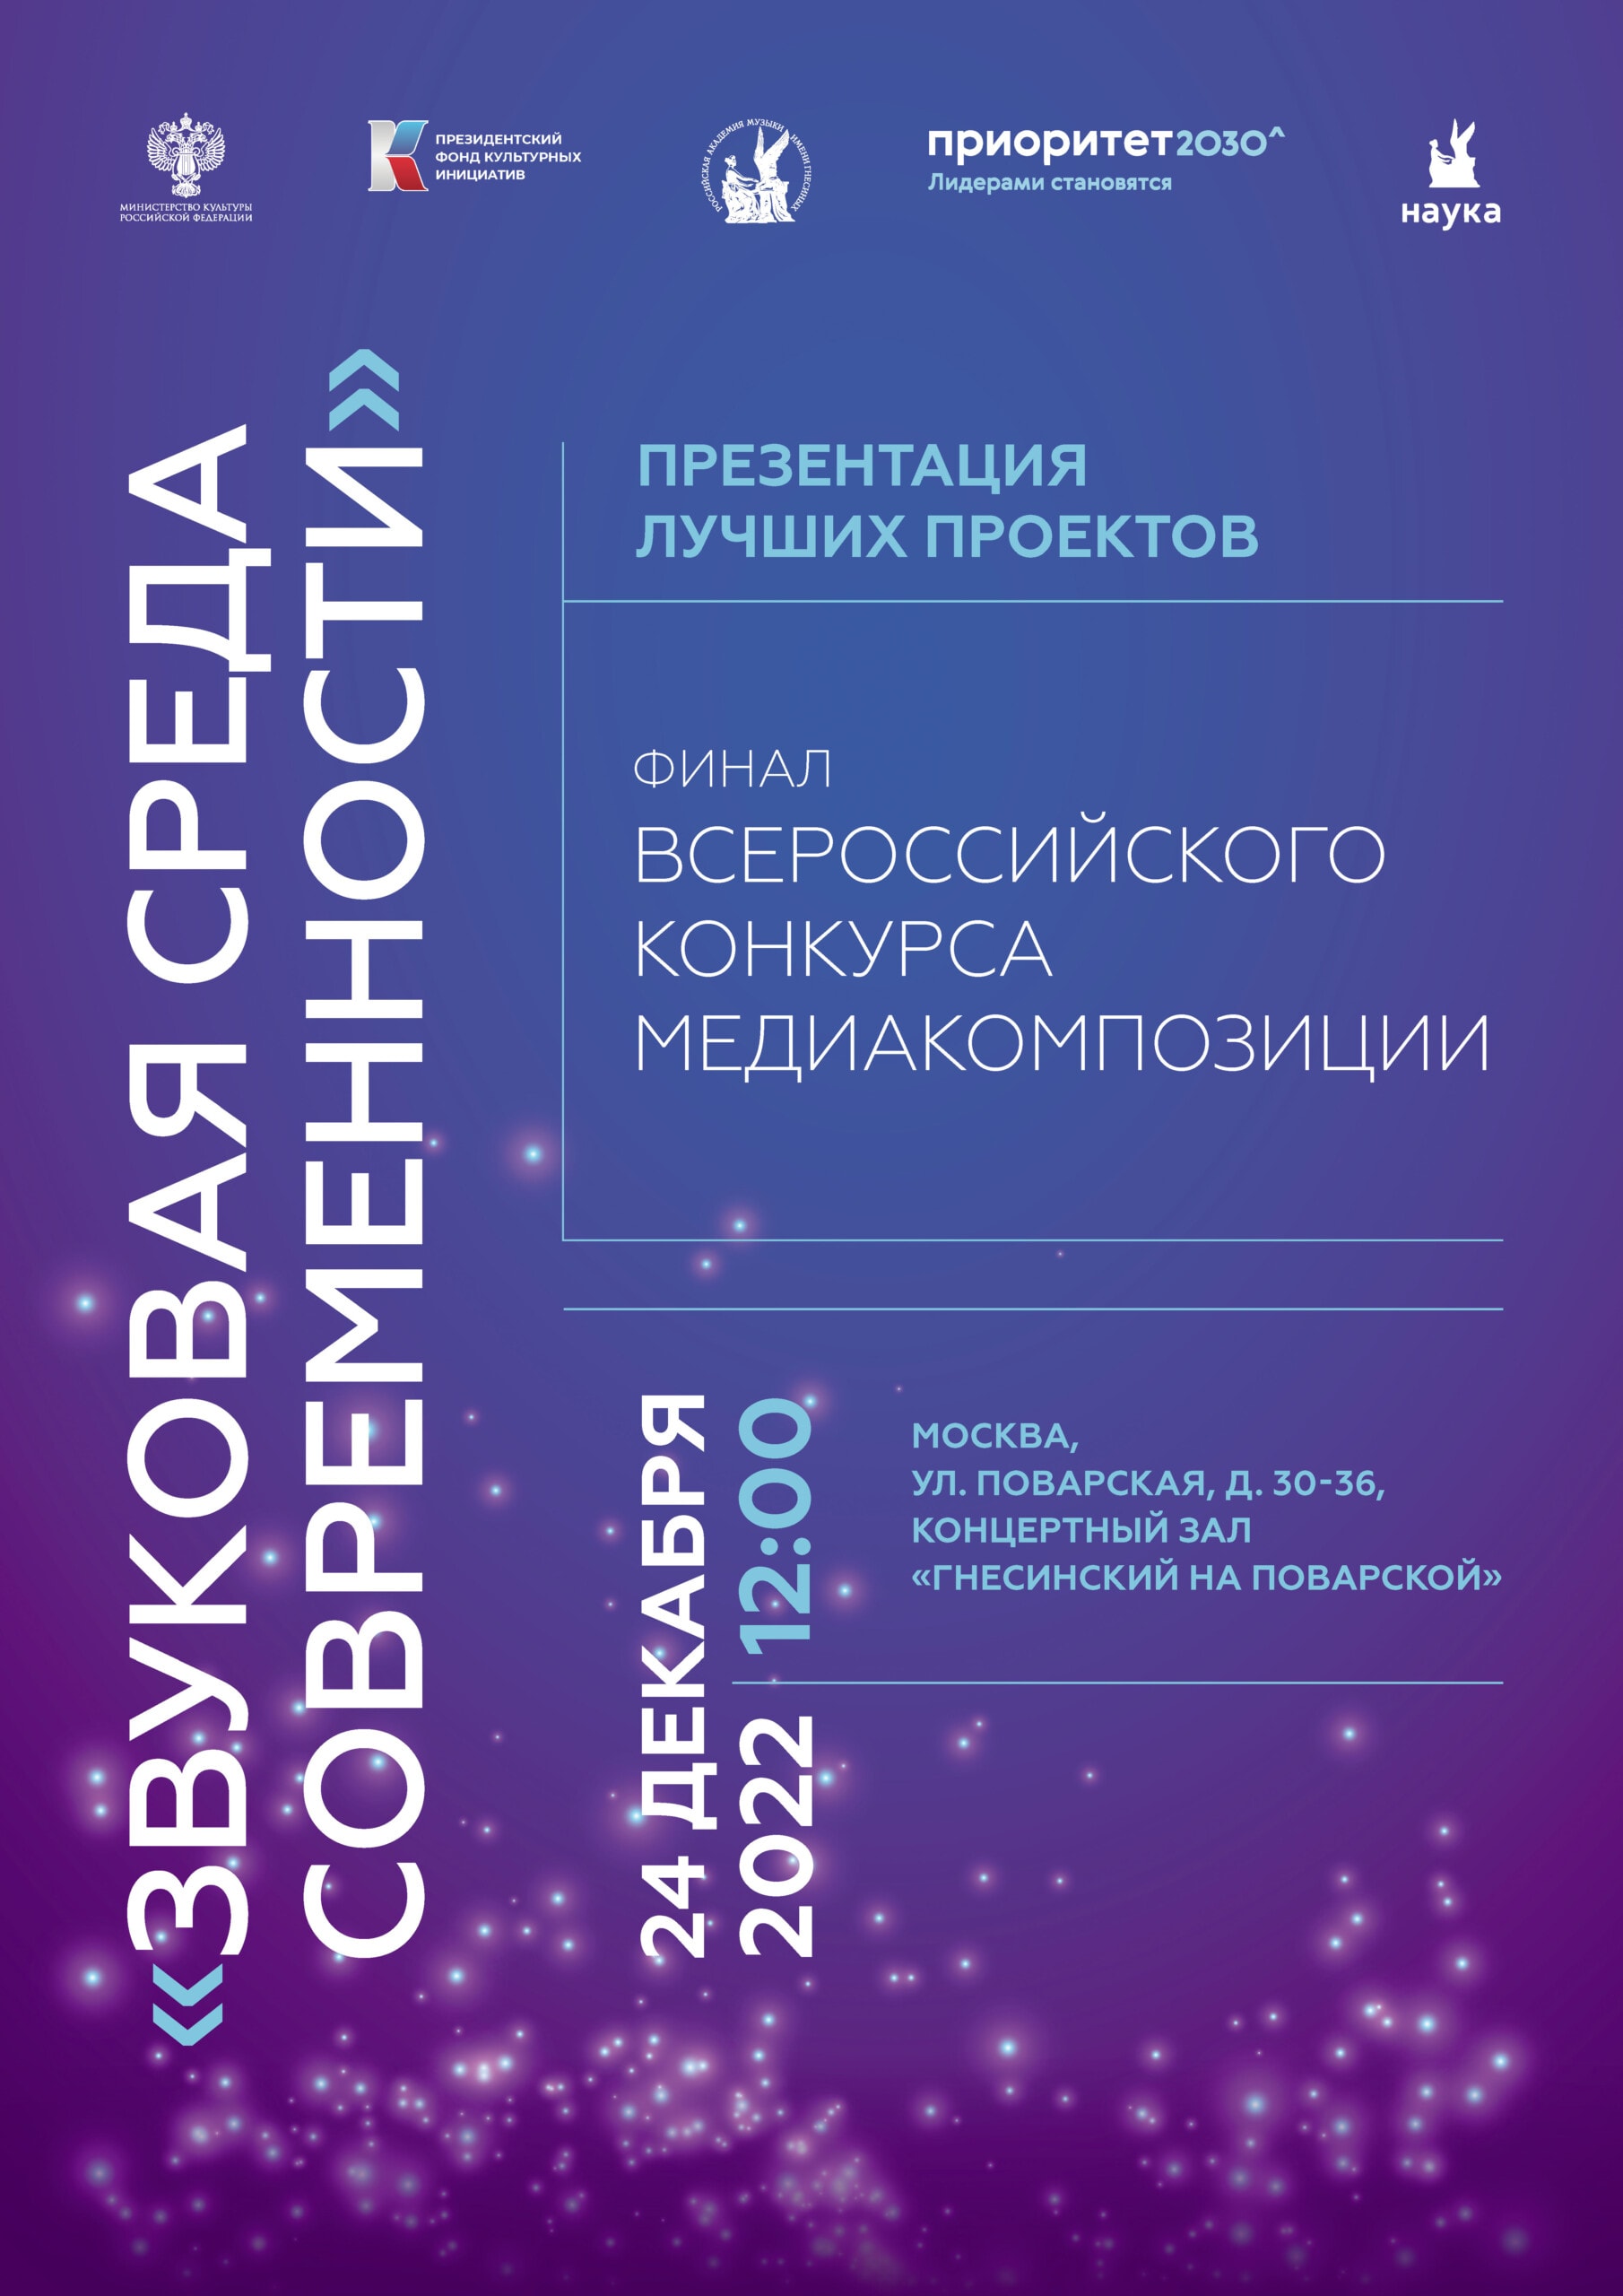 Всероссийский конкурс медиакомпозиций: Гнесинка приглашает на финал